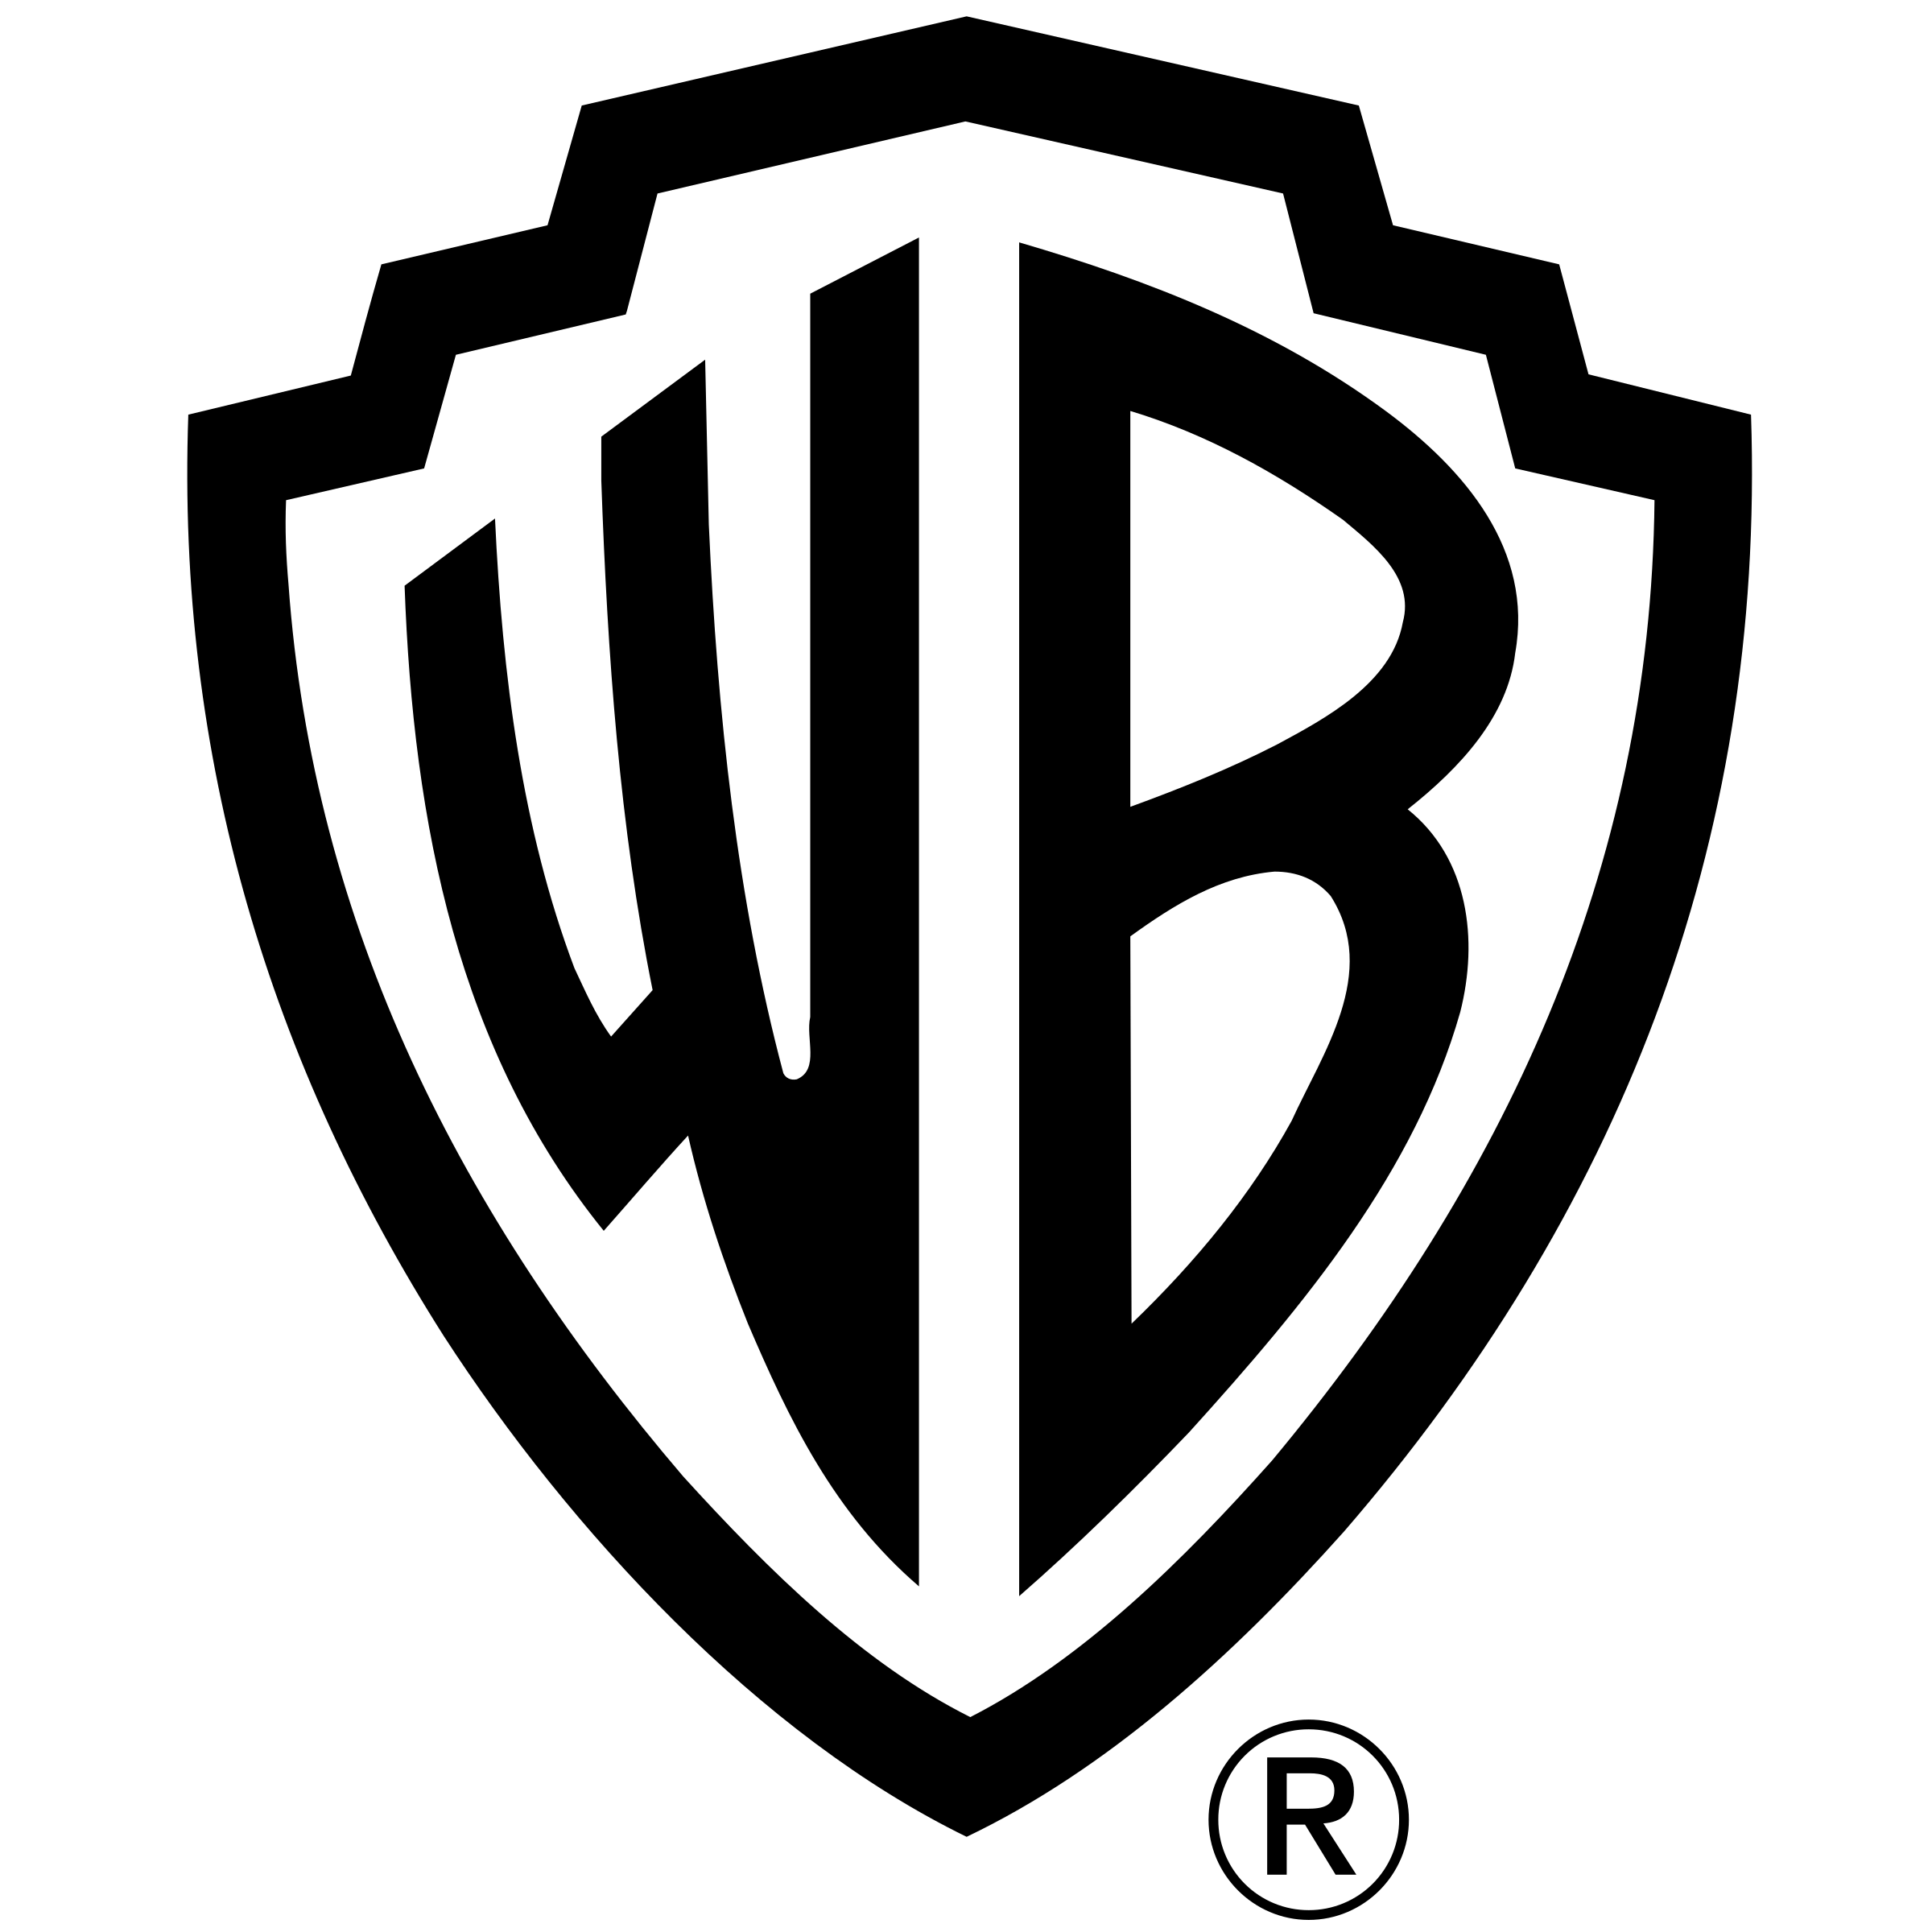 Warner Bros Logo Png Image Wi